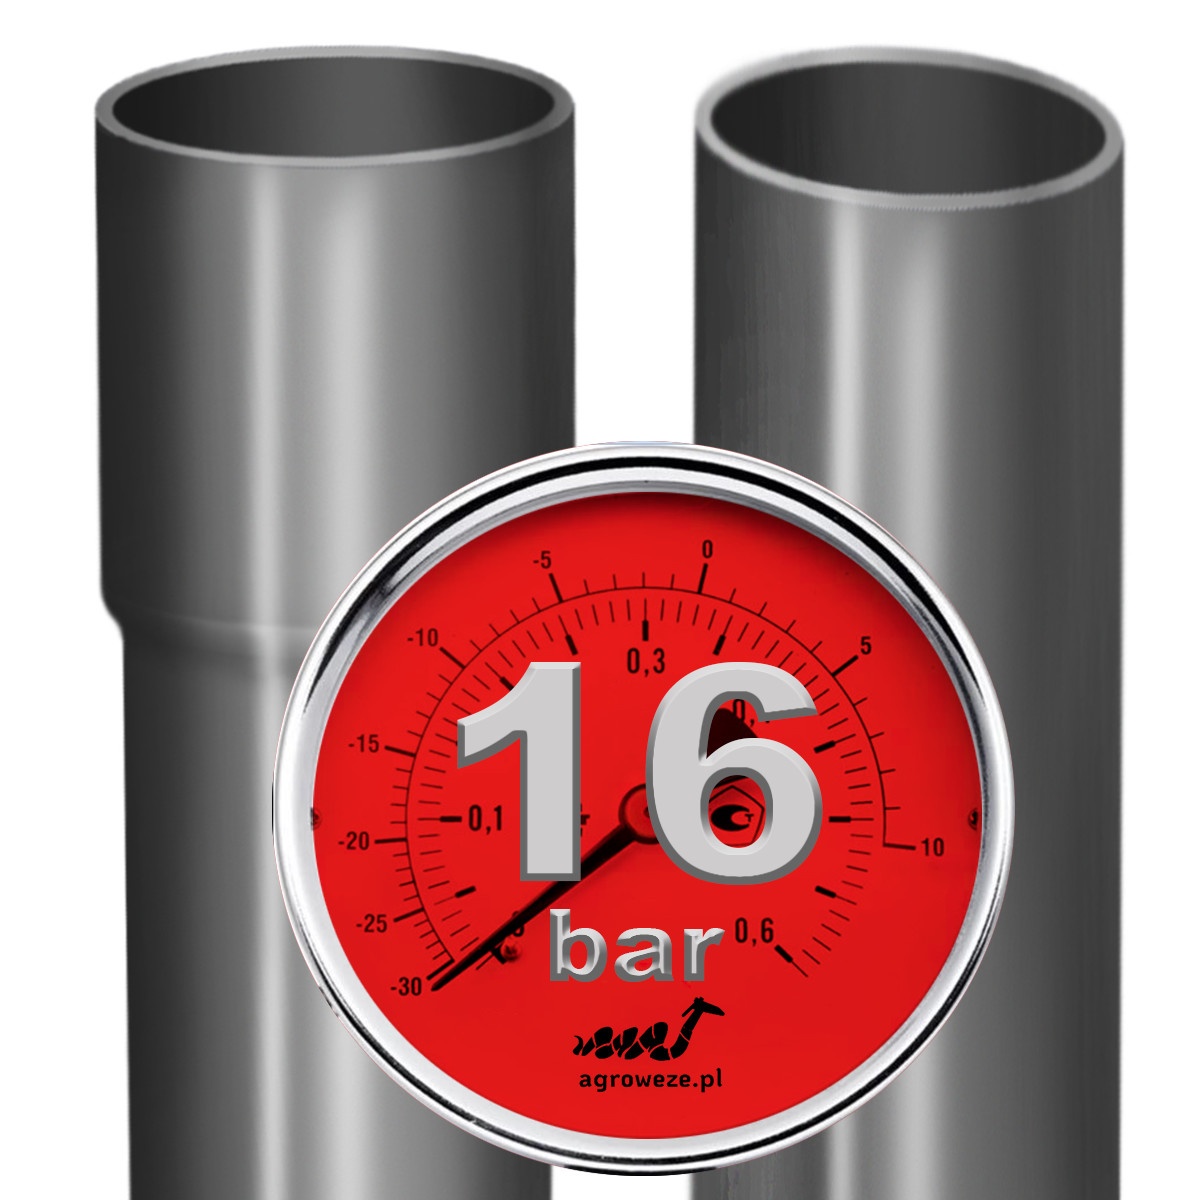 16 bar